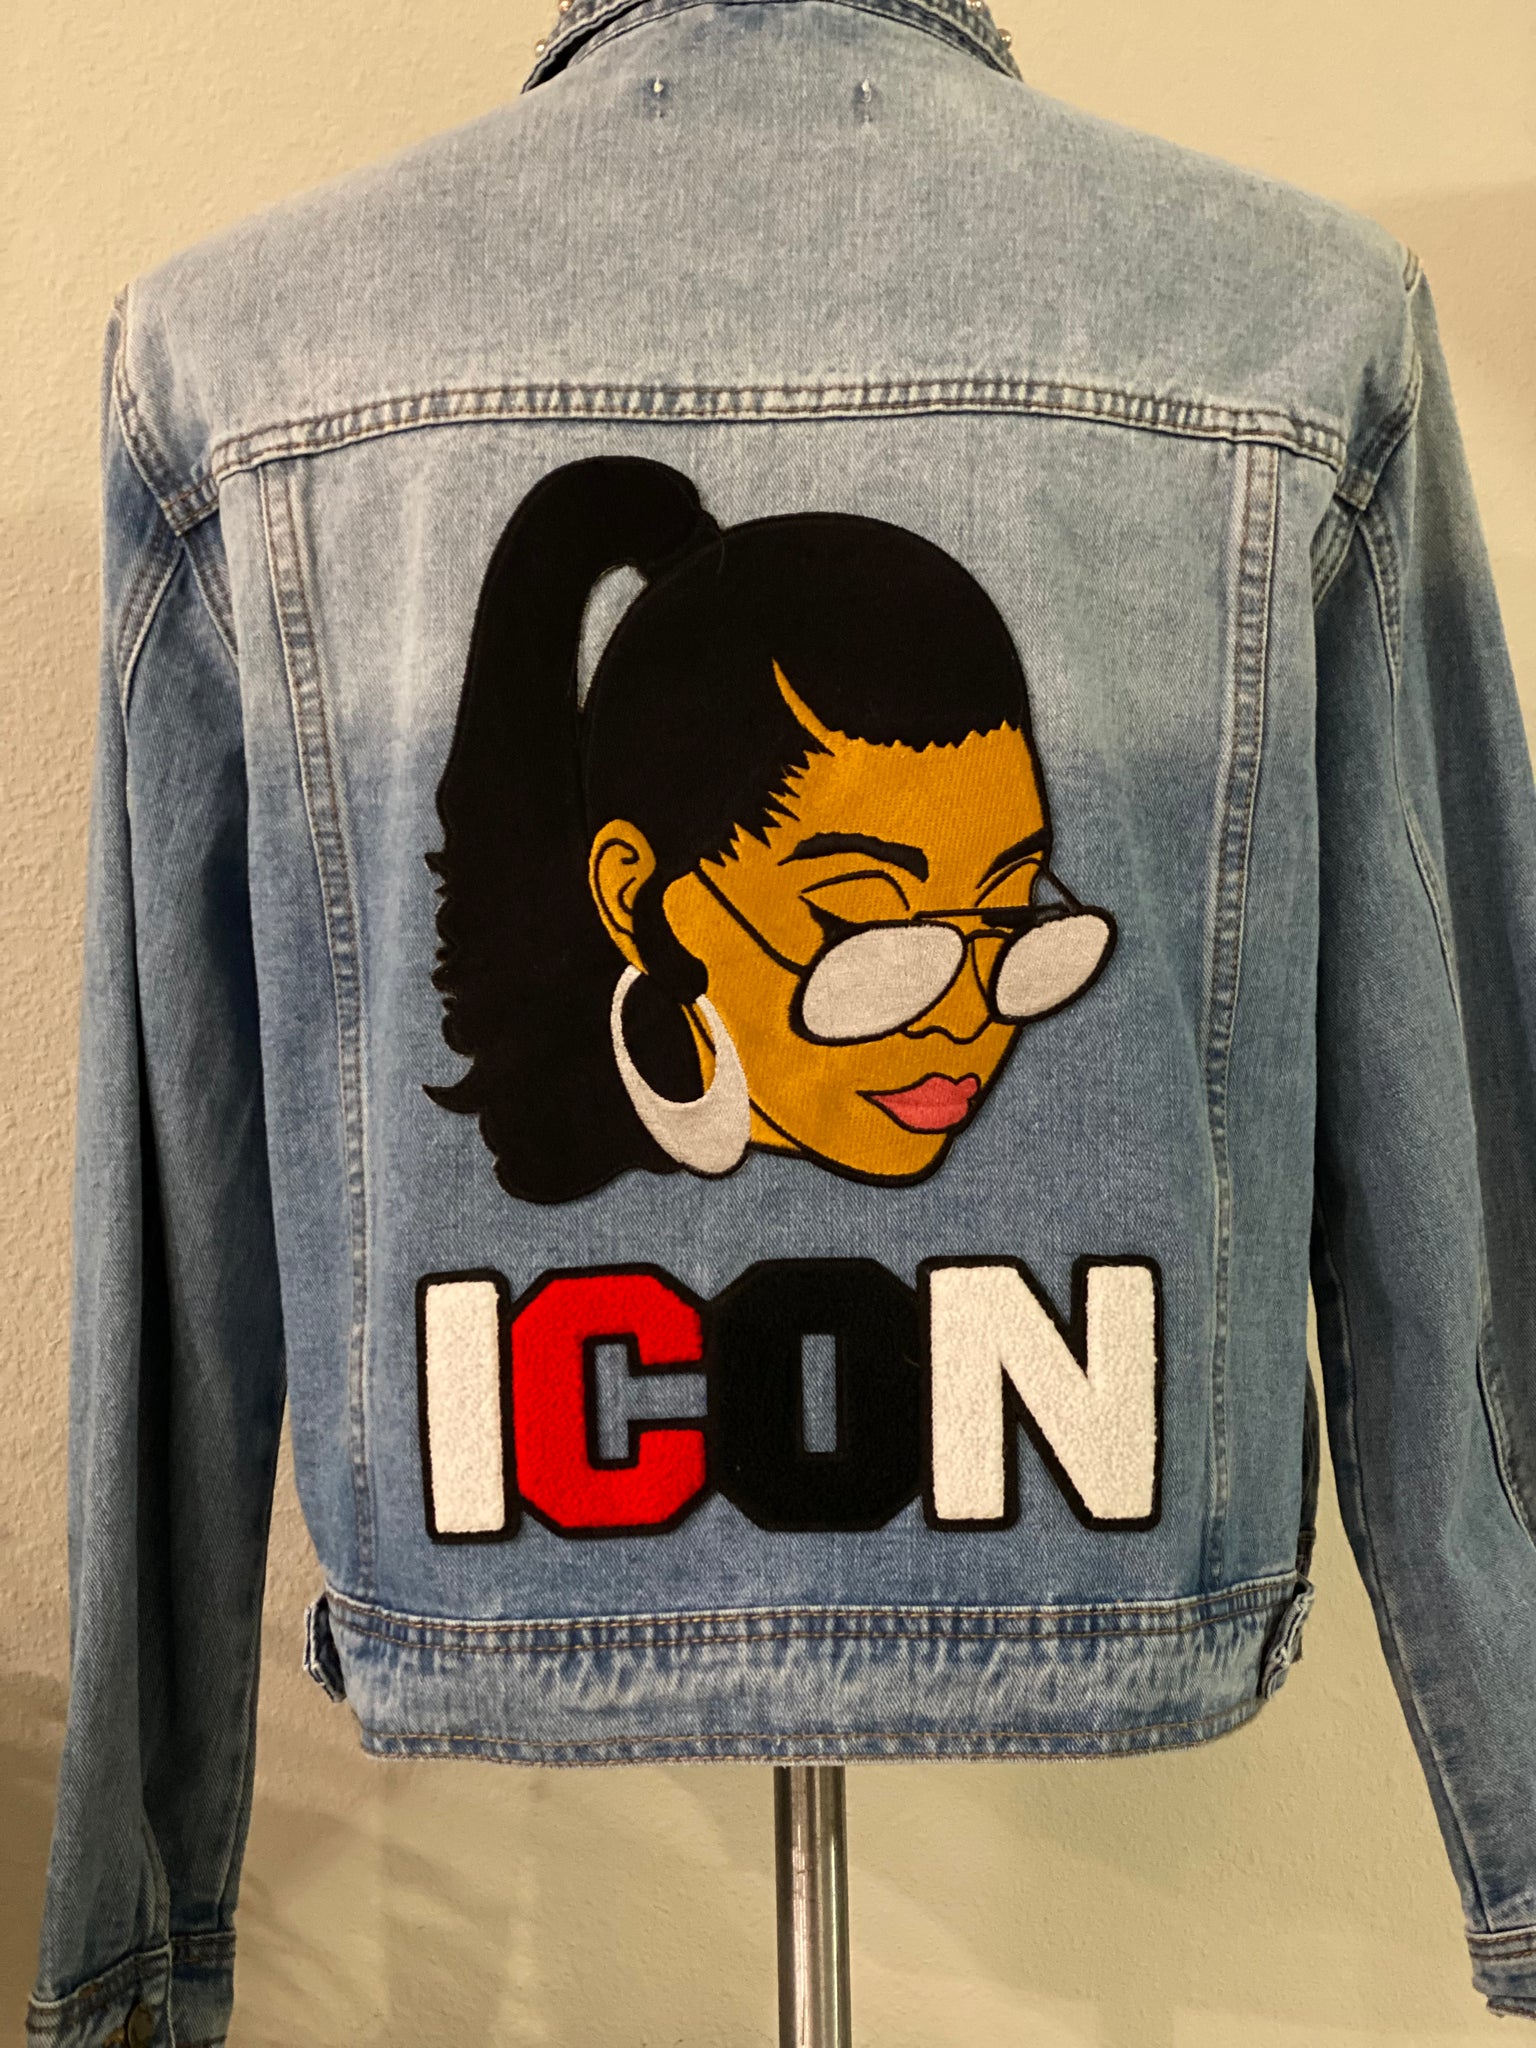 (New) Icon - Custom  “Reworked”  Denim Jacket Plus Size 2X